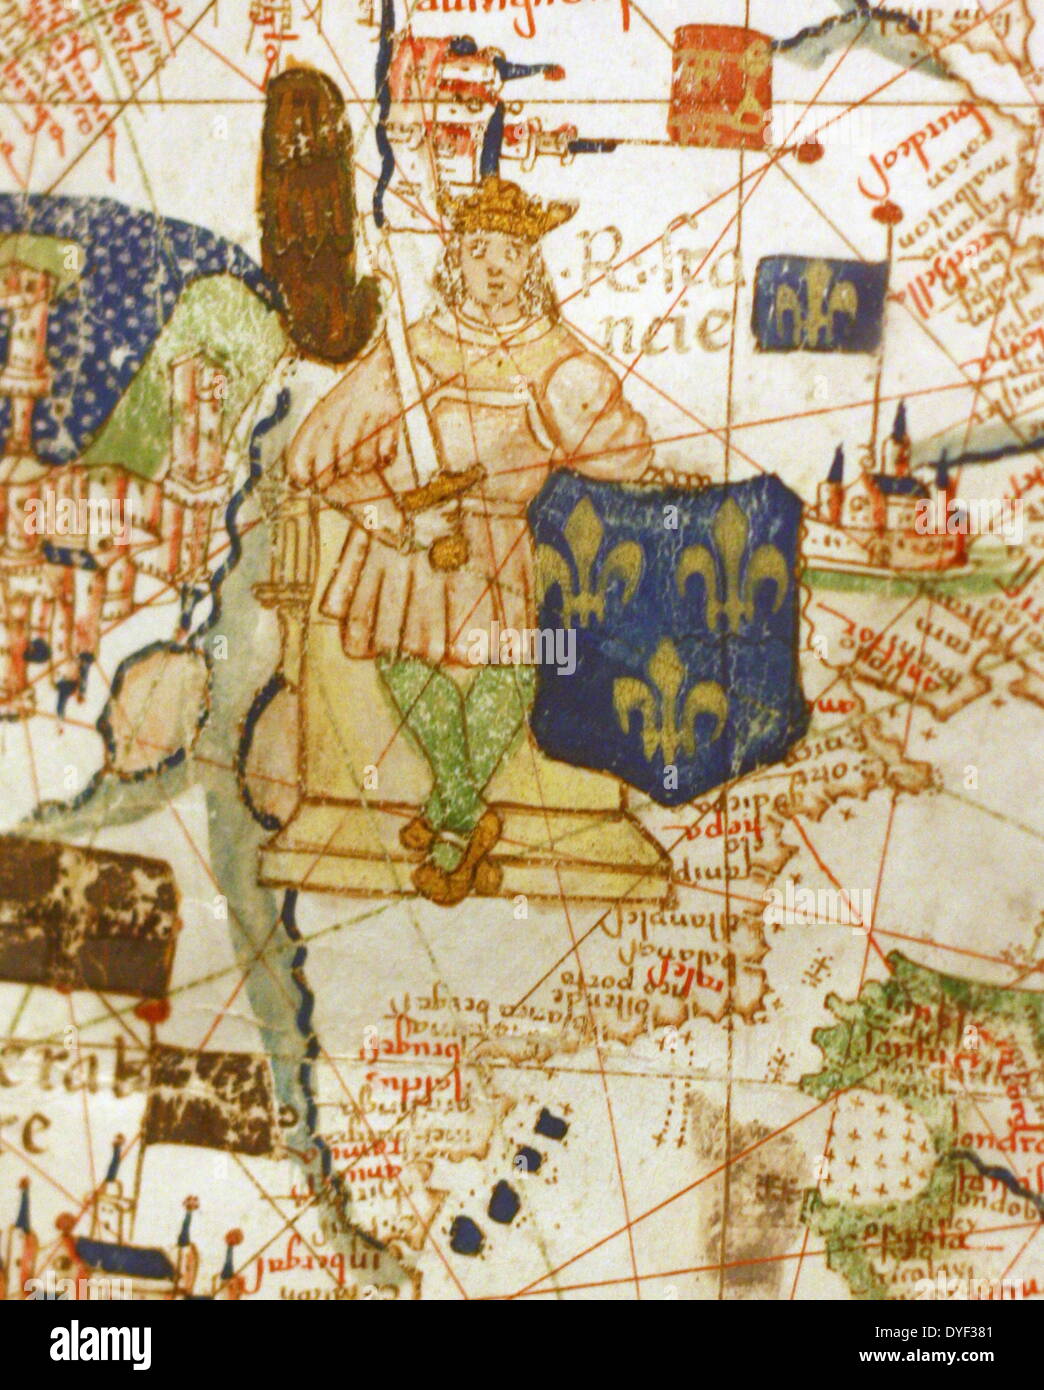 Détail d'une carte de l'Europe navigation illustre, à partir de 1528. Faites par Jacopo Russo. À Messine, en Sicile. Banque D'Images